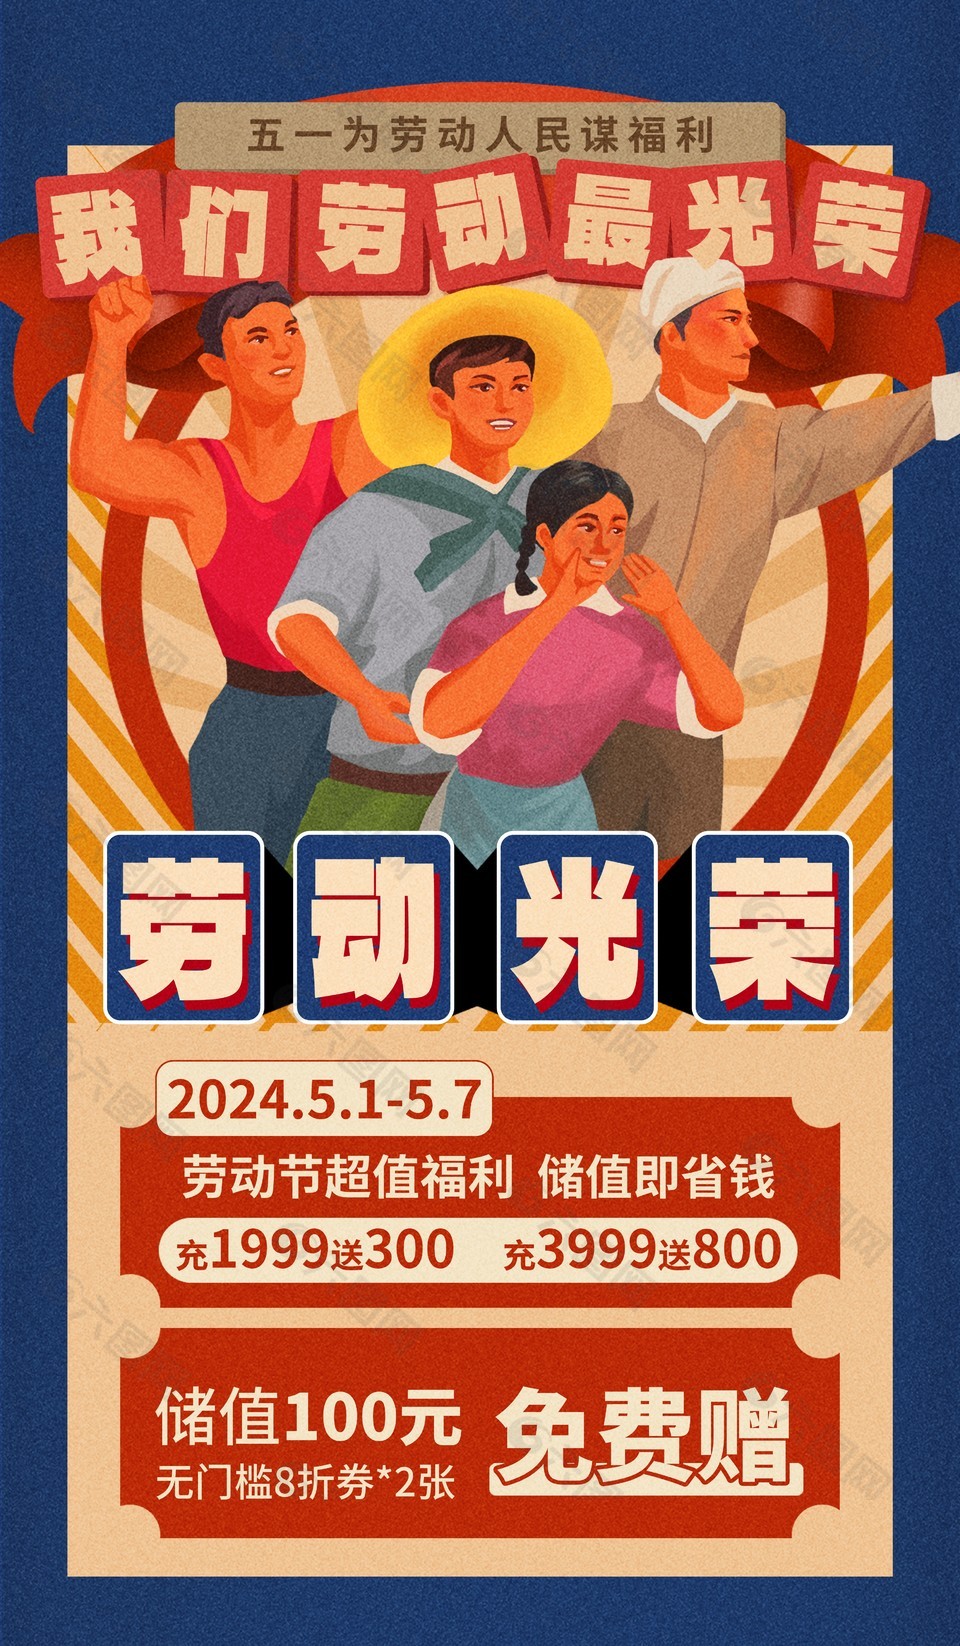 劳动节超值福利复古风格海报设计